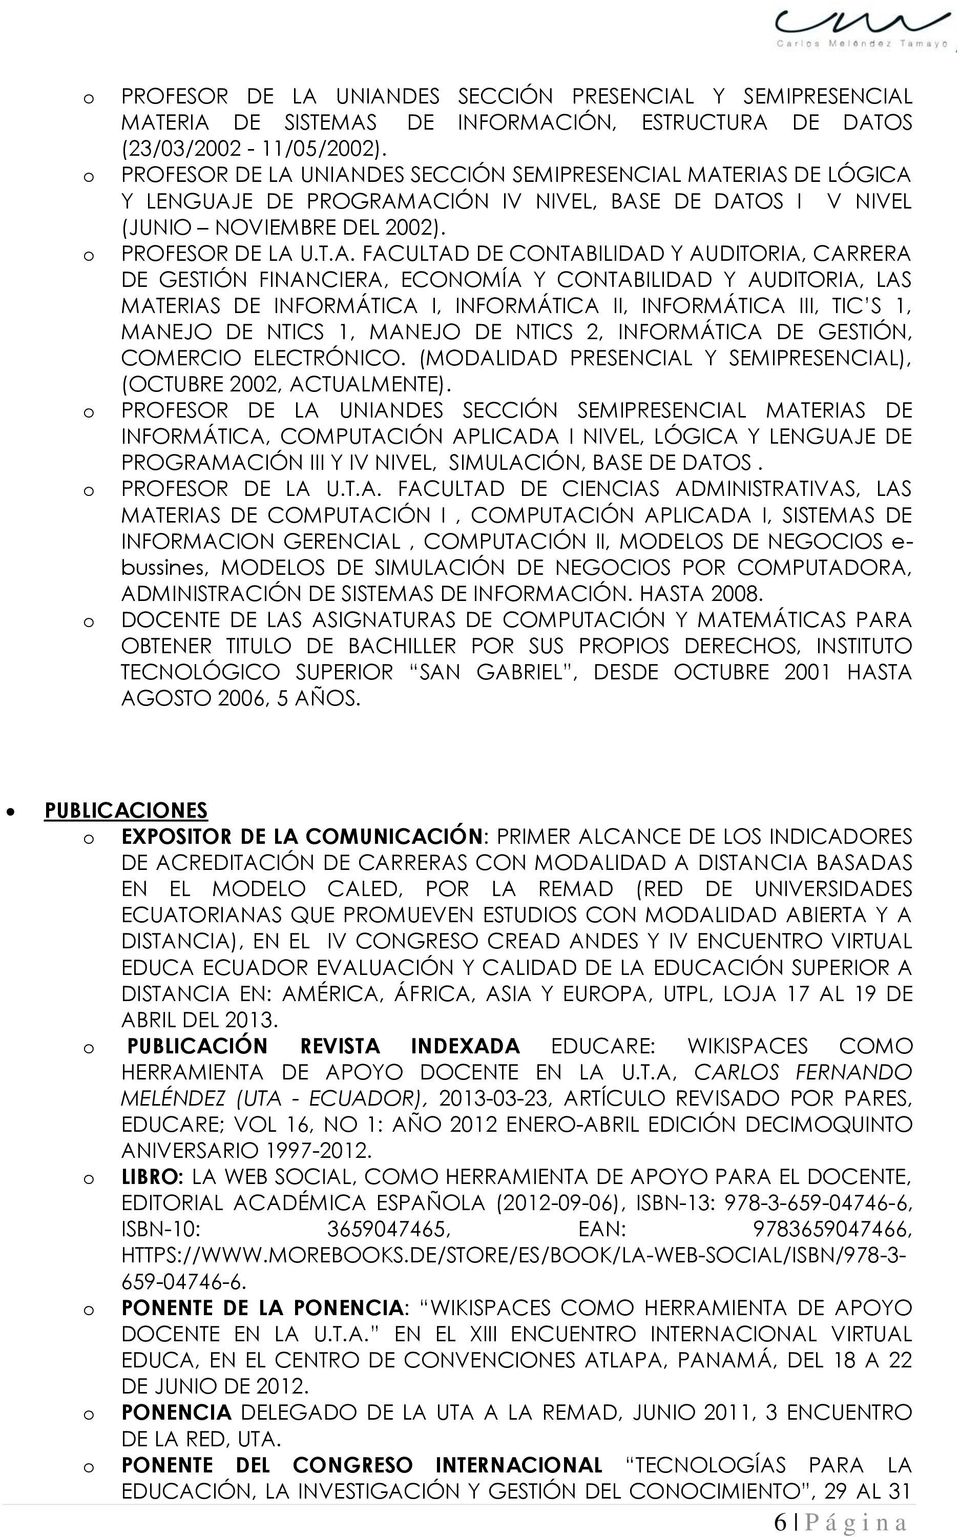 UNIANDES SECCIÓN SEMIPRESENCIAL MATERIAS DE LÓGICA Y LENGUAJE DE PROGRAMACIÓN IV NIVEL, BASE DE DATOS I V NIVEL (JUNIO NOVIEMBRE DEL 2002). U.T.A. FACULTAD DE CONTABILIDAD Y AUDITORIA, CARRERA DE